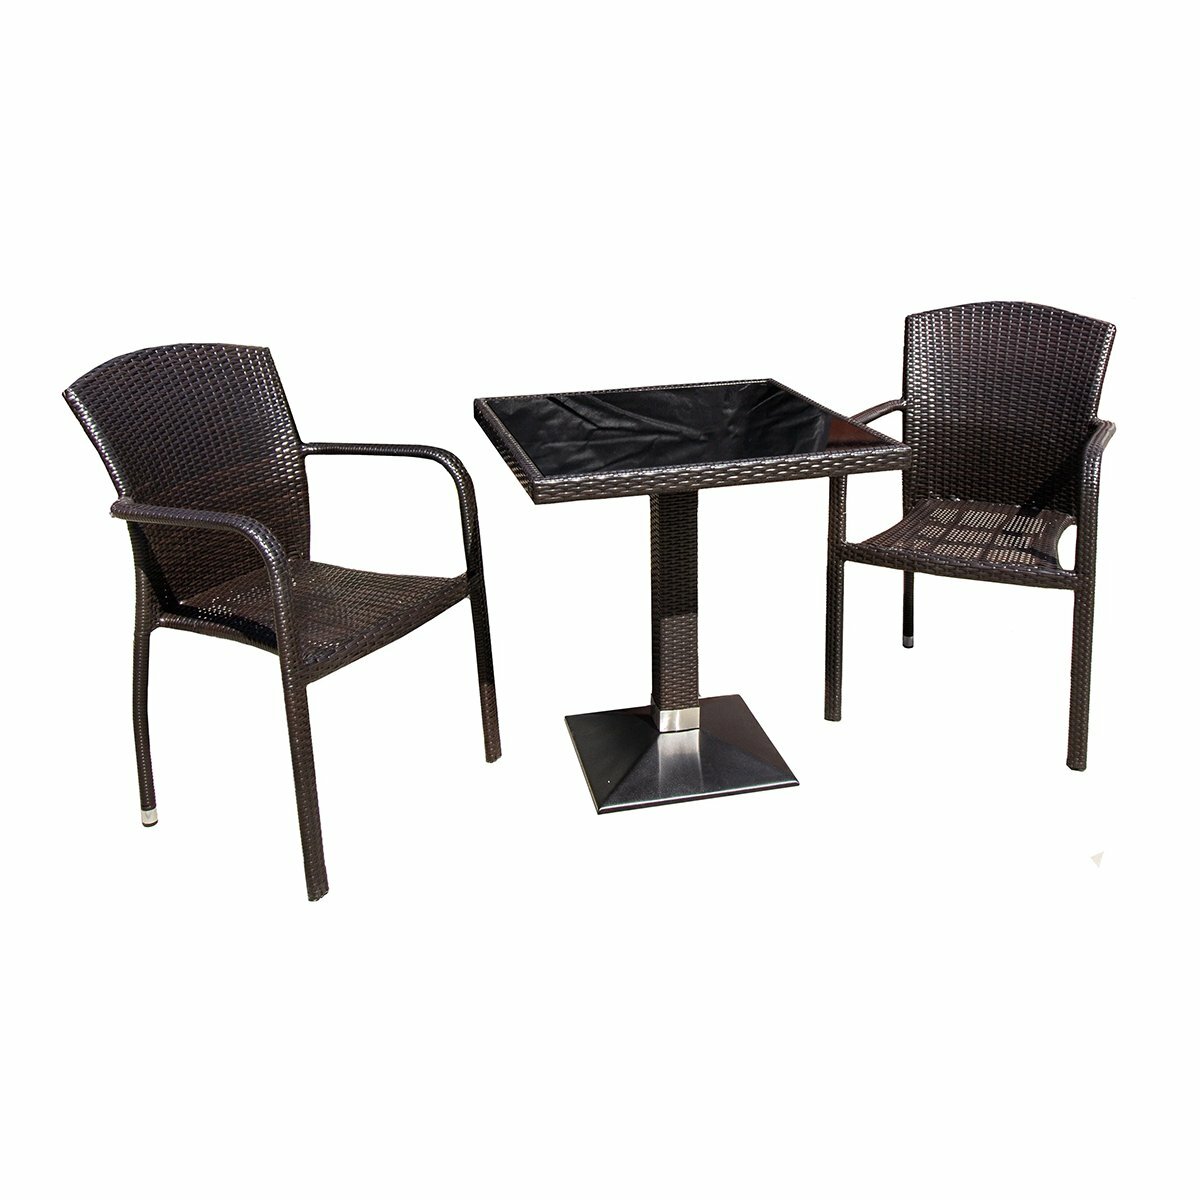 Комплект садовой мебели Garden story Амиго Мини (2 кресла 1 стол) коричневый